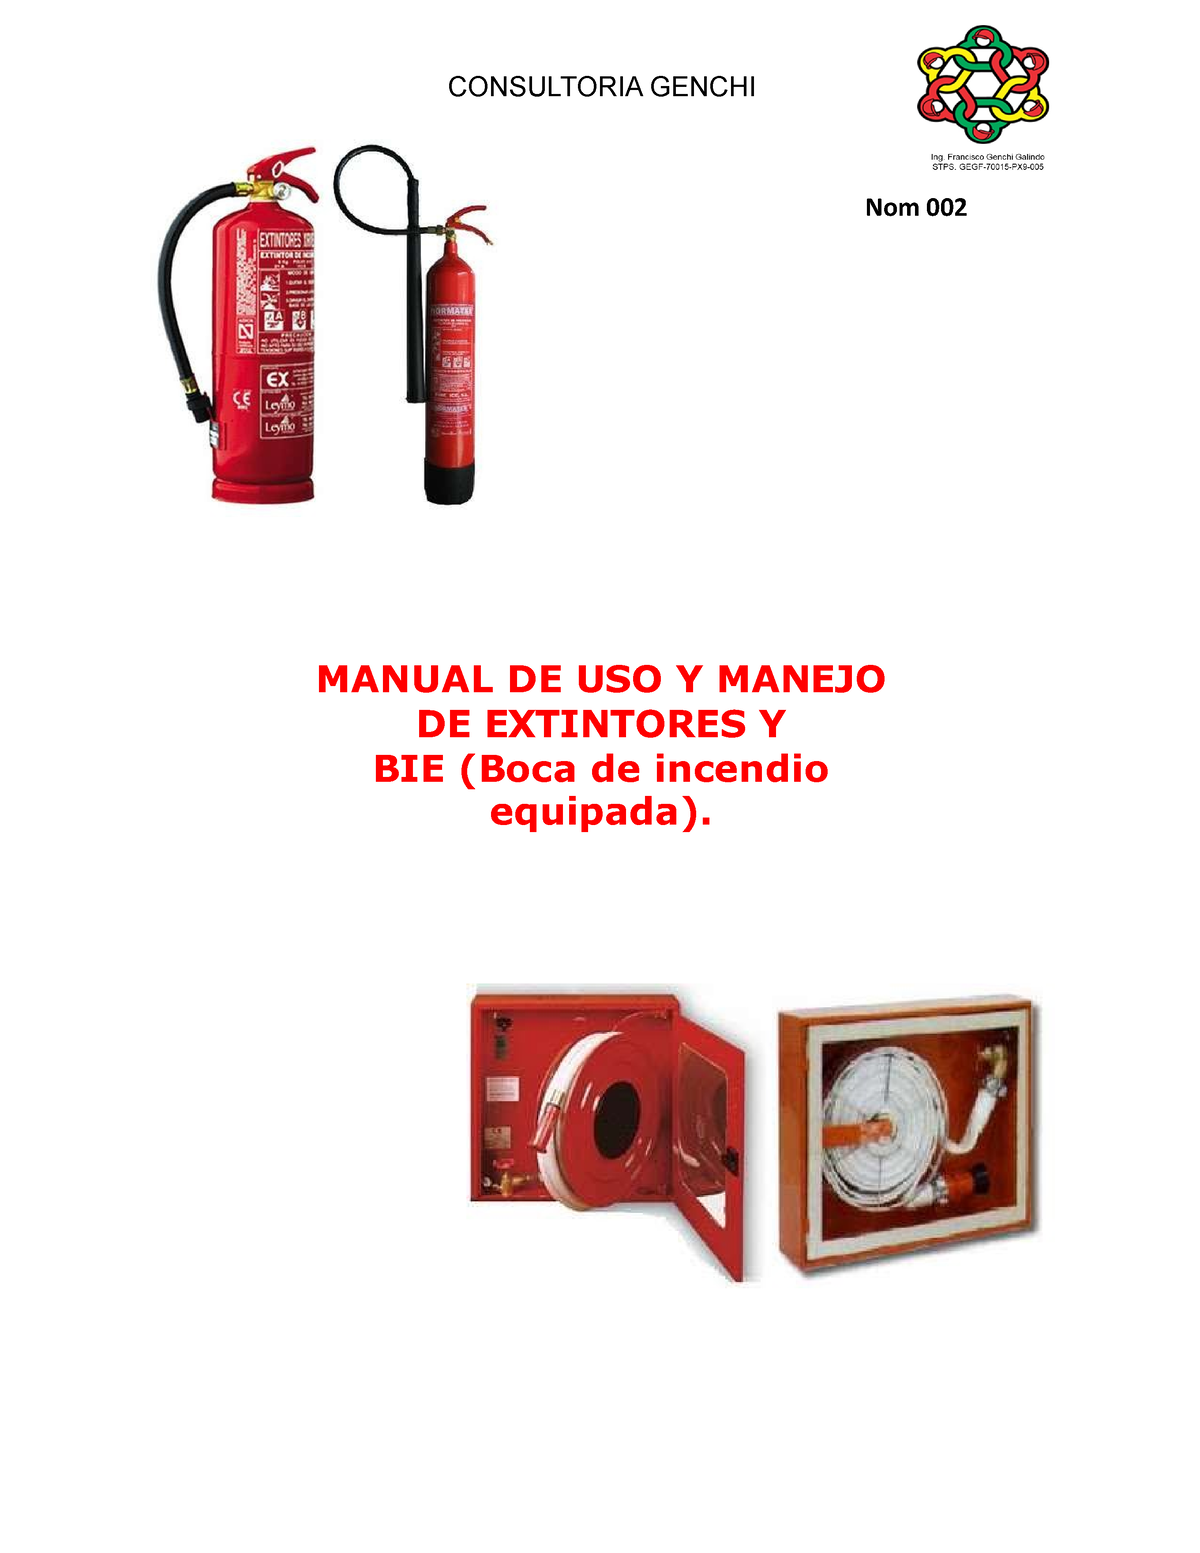 7 Manual De Uso Y Manejo De Extintores Y Bie Nom 002 Manual De Uso Y Manejo De Extintores Y 7484